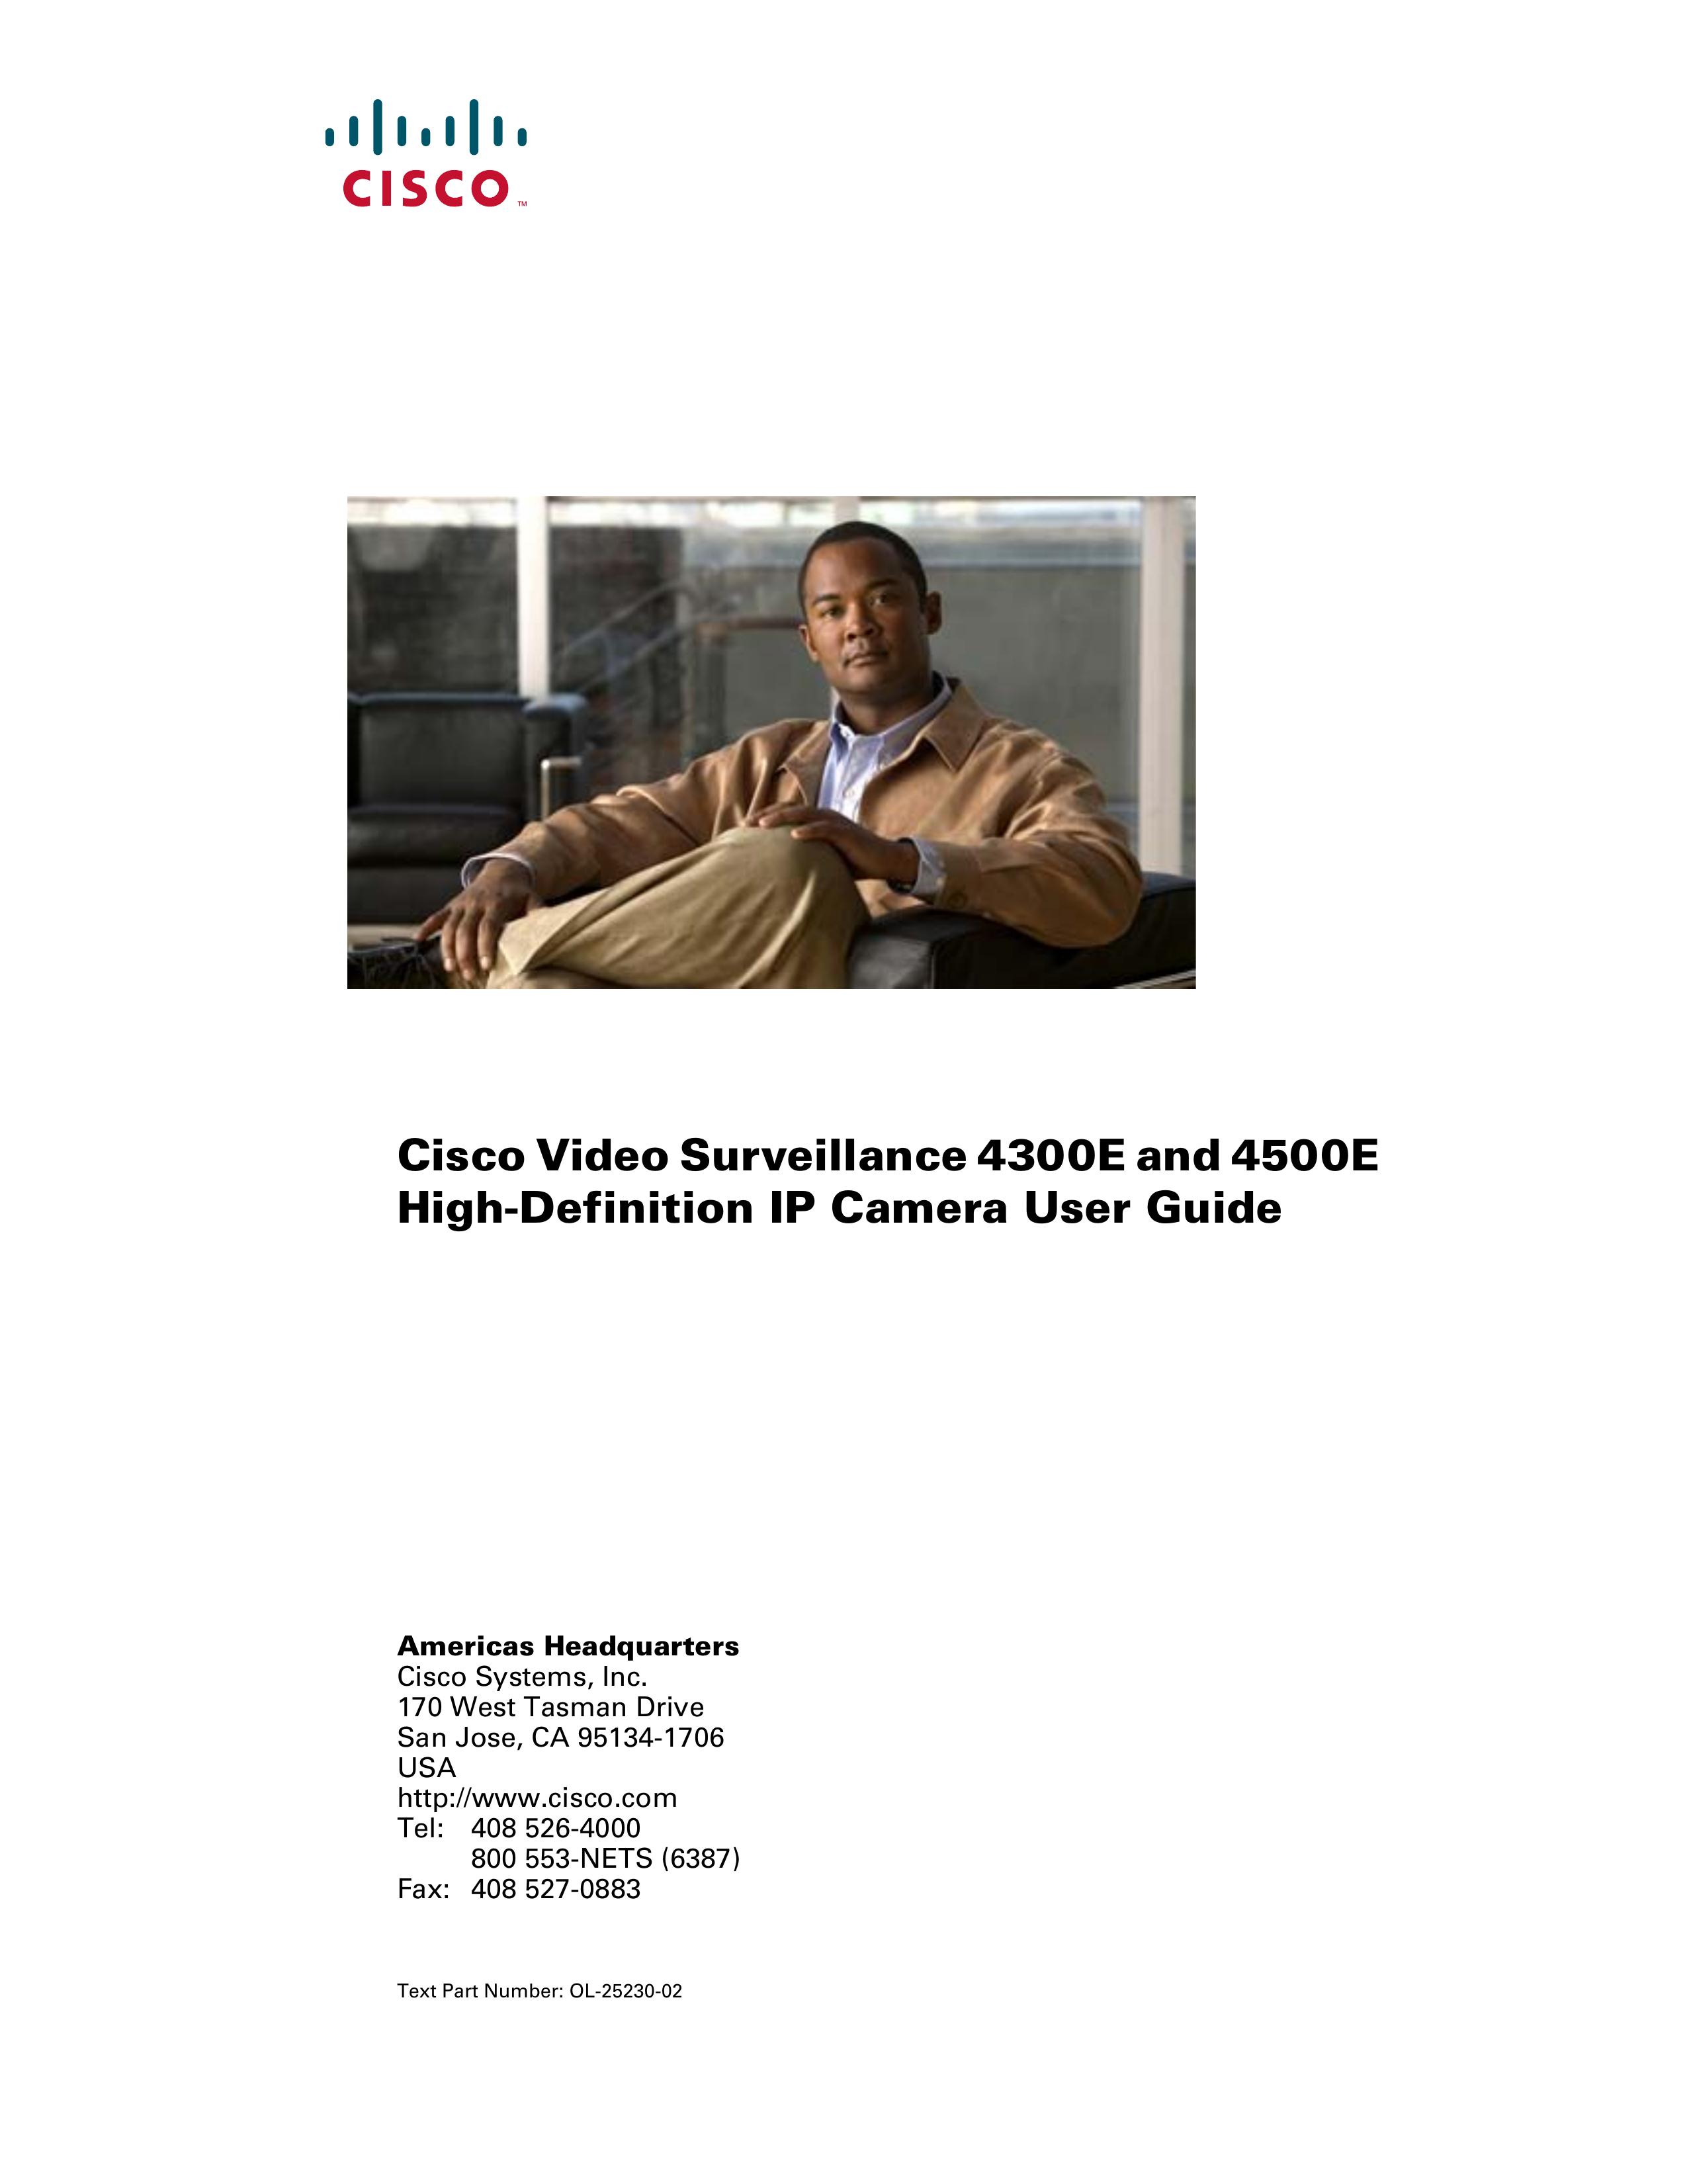 Cisco Systems 4500E Security Camera User Manual